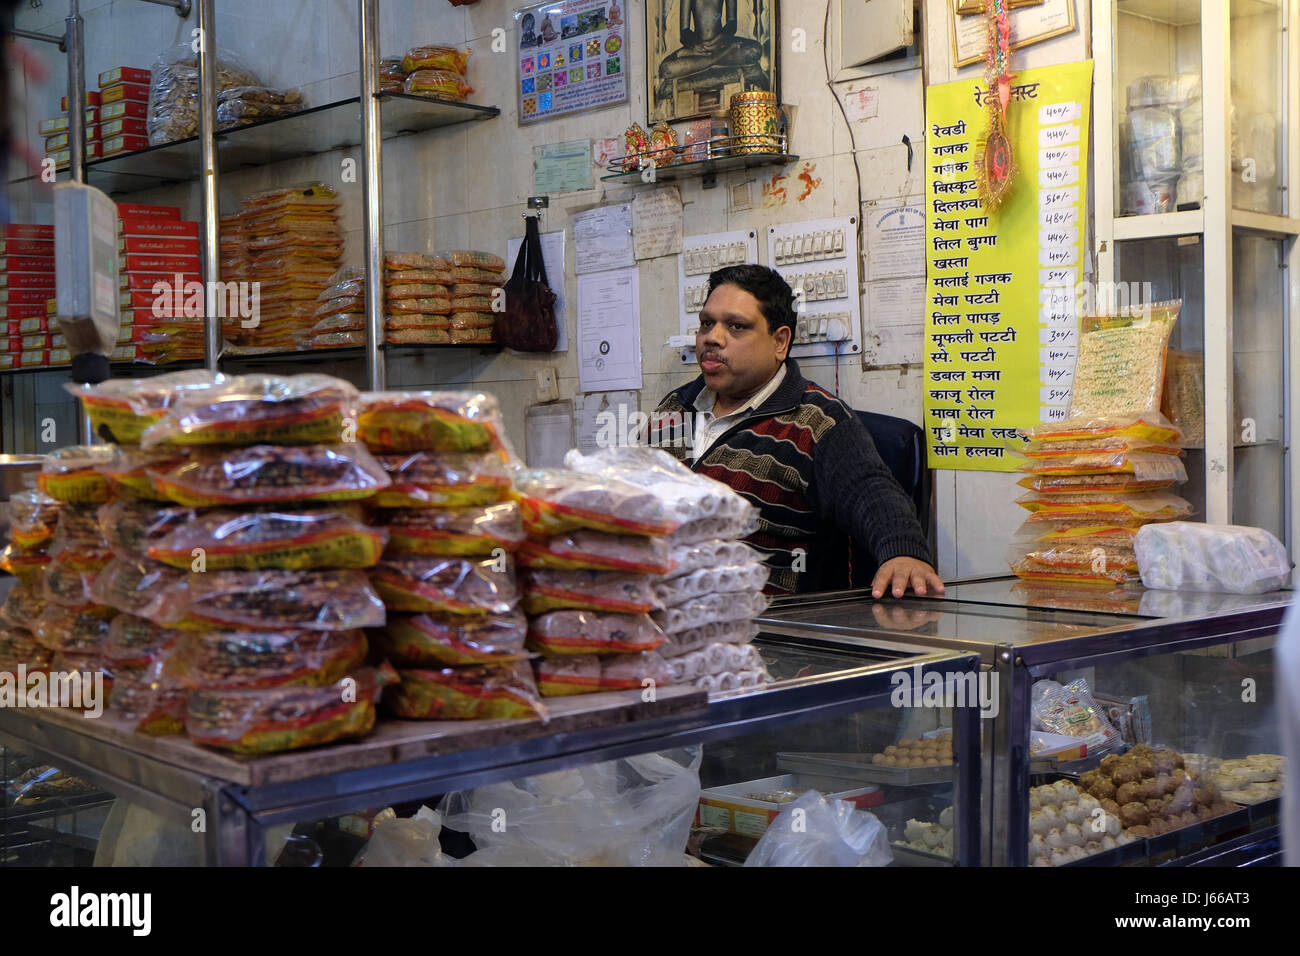 Indische Shop in Delhi, Indien am 13. Februar 2016. Kleine Geschäfte wie diese sind die häufigsten in armen Region von Delhi. Stockfoto